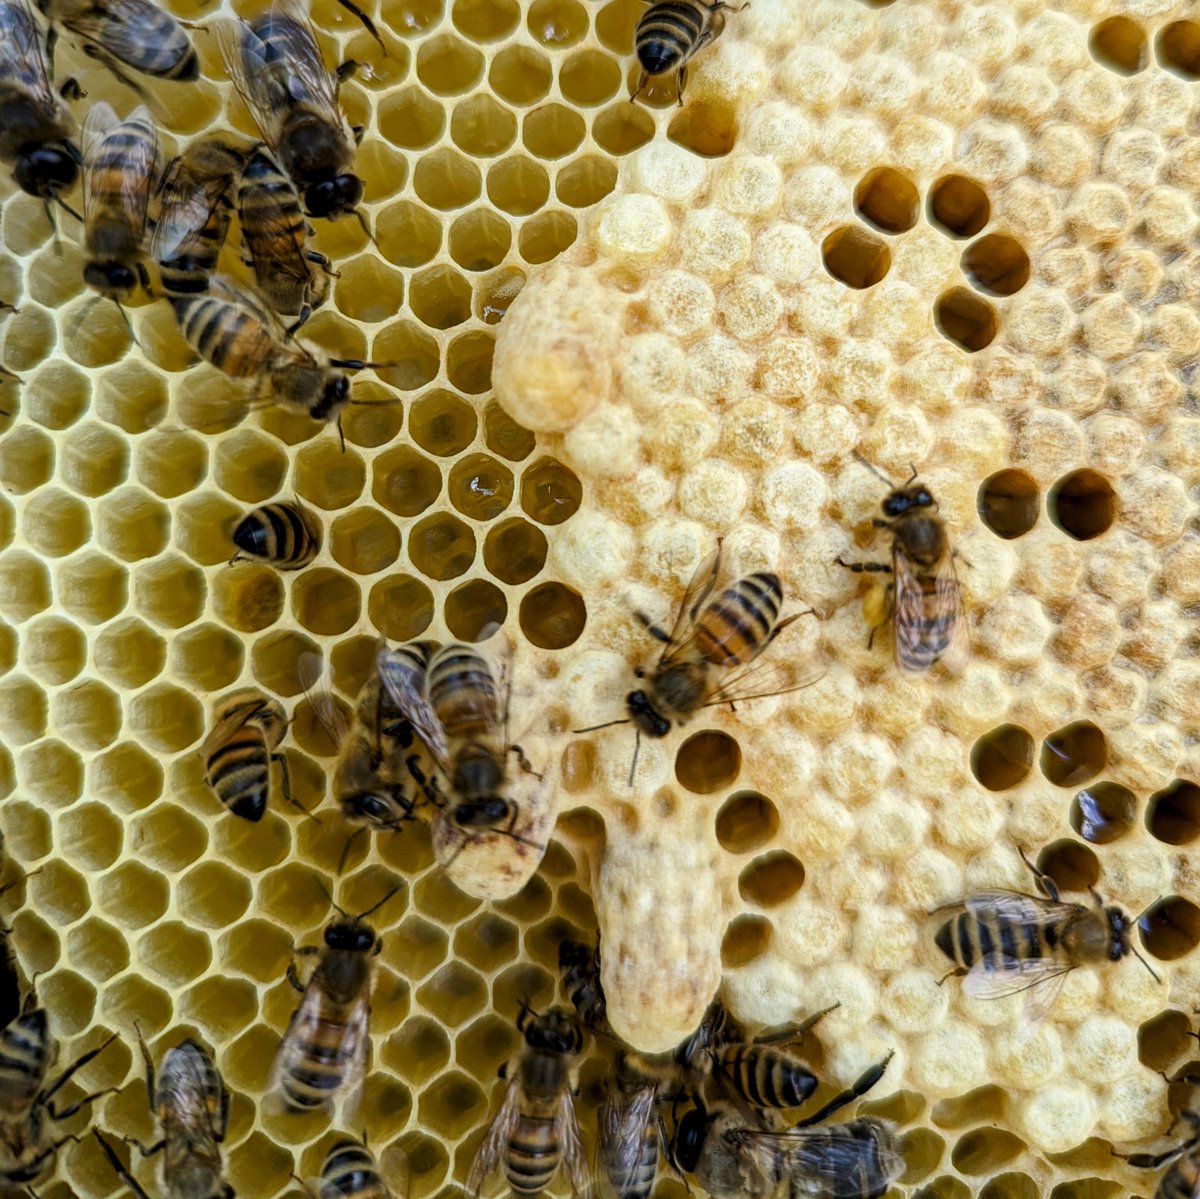 Emergency Queen cells are rarely as good as Spring swarm cells
#NorfolkHoneyCo
#StewartSpinks
#BeekeepingForAll
#Beekeeping
#Honeybees
#BeeFarmer
#Patreon